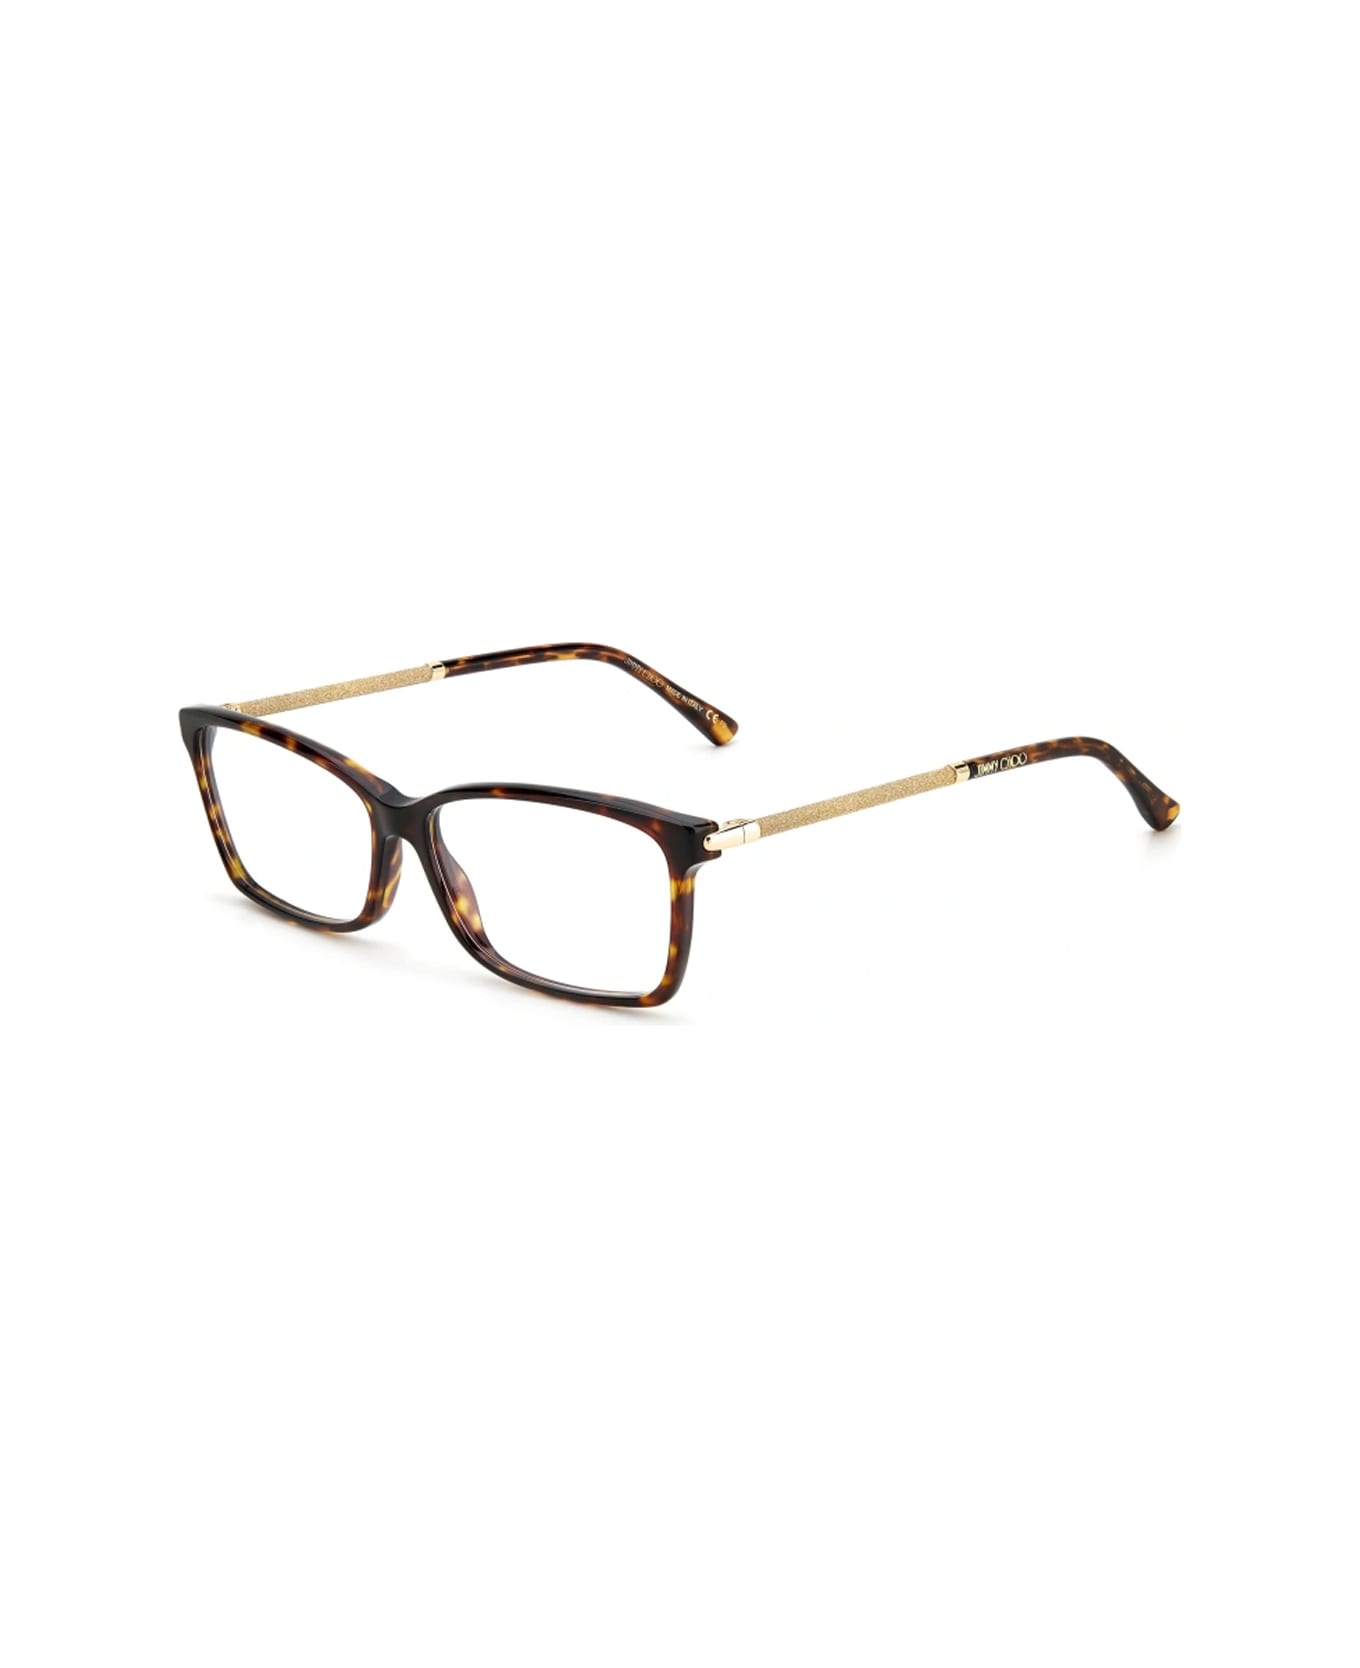 Jimmy Choo Eyewear Jc332 086/14 Havana Glasses - Marrone